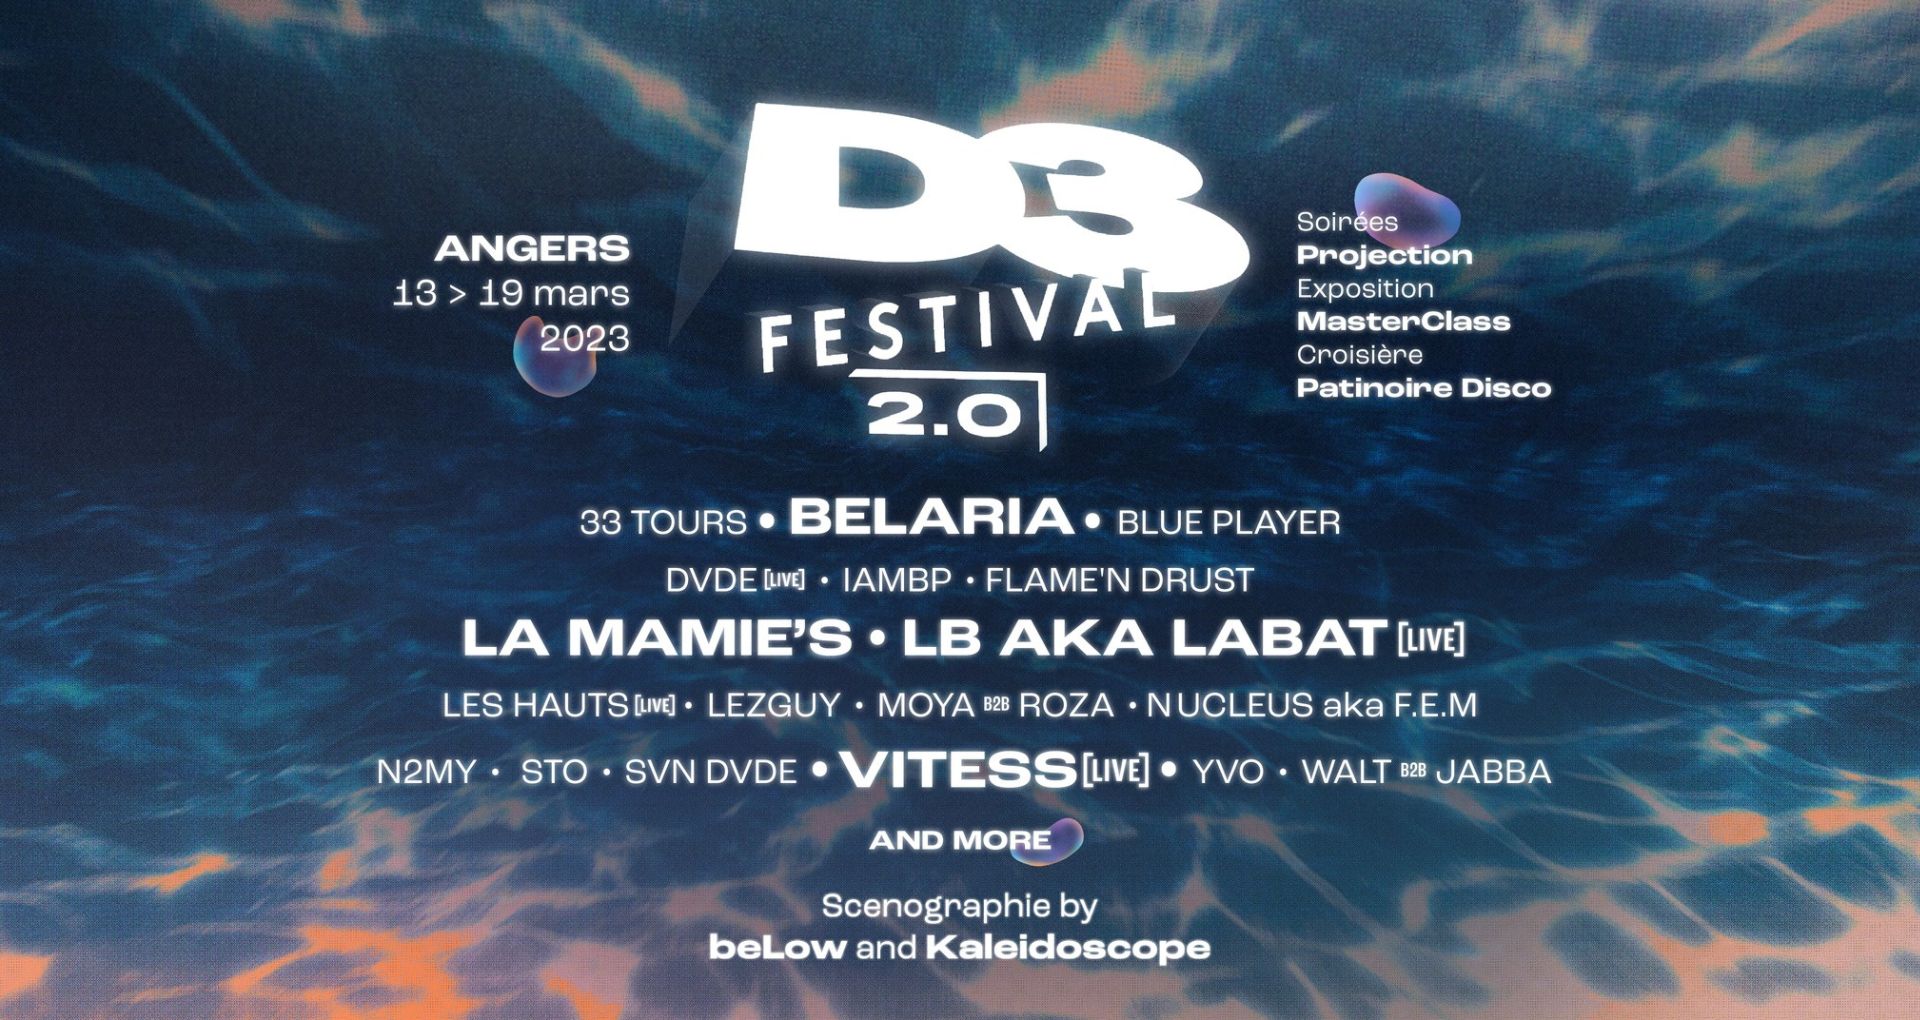 L'affiche du D3 Festival 2023